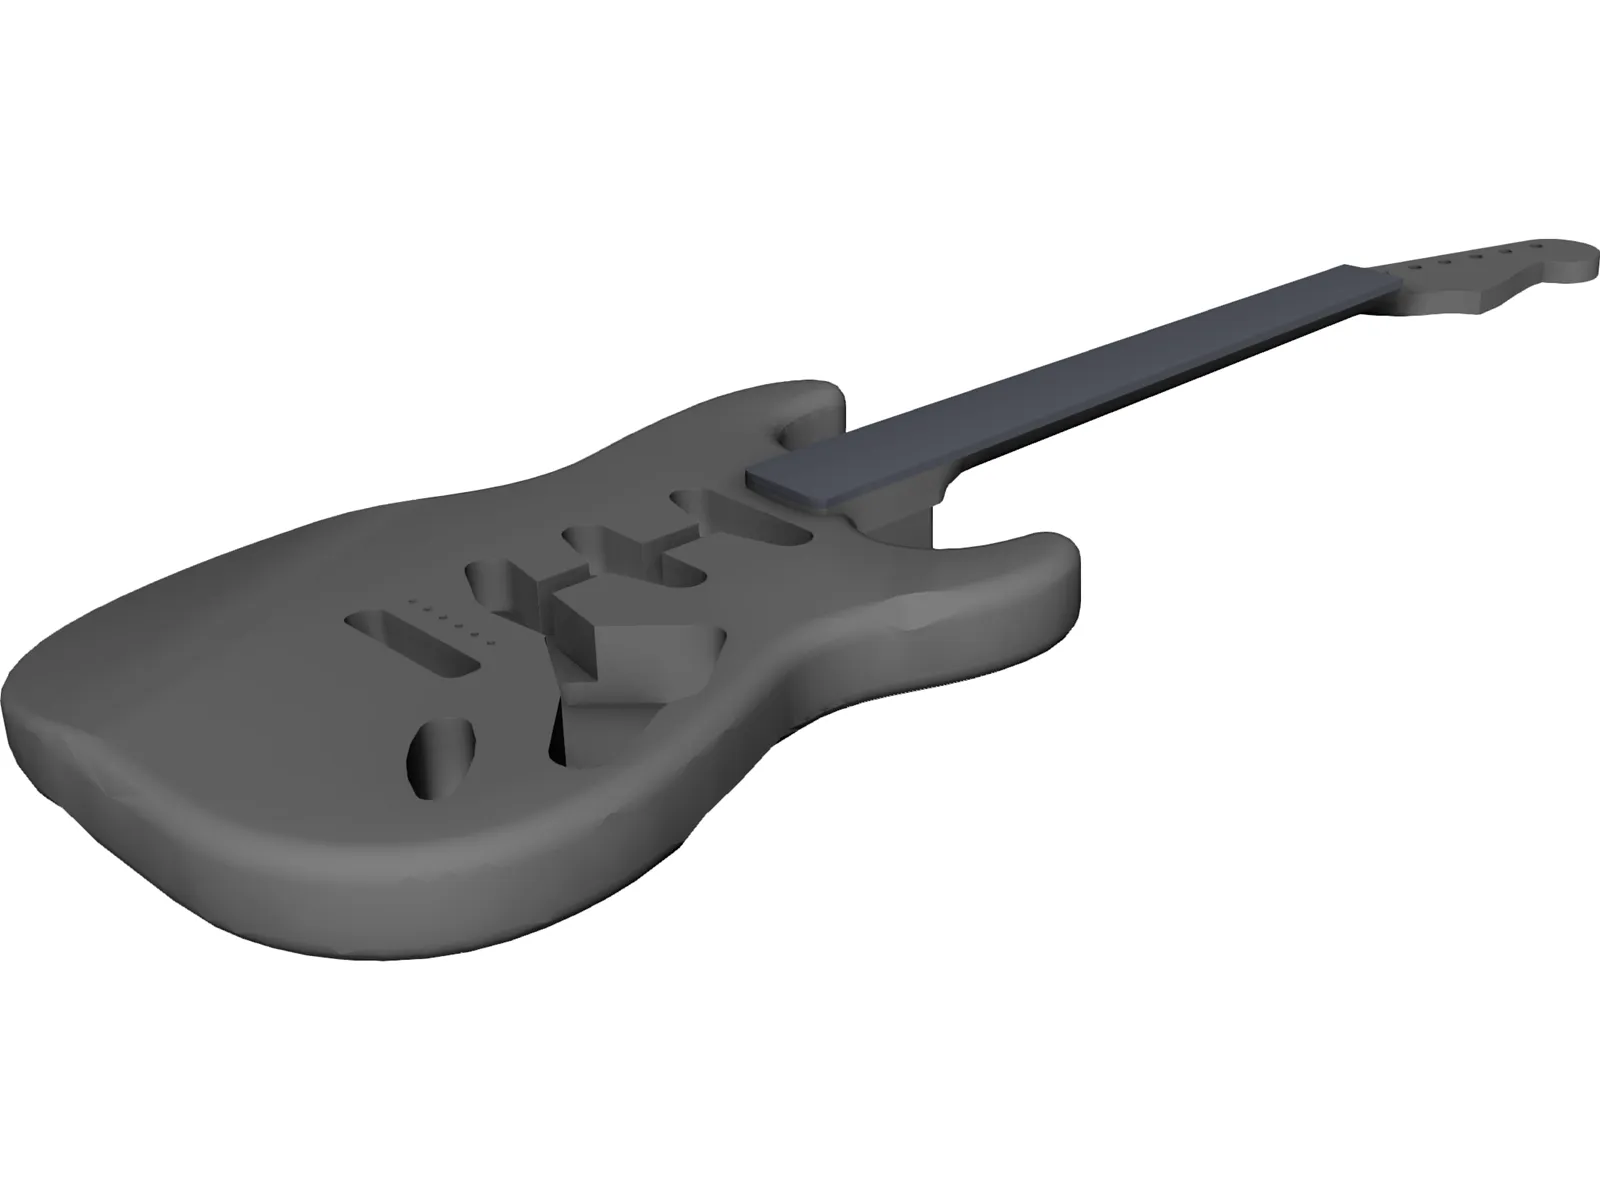 Fender Stratocaster Guitar Body 3D Model